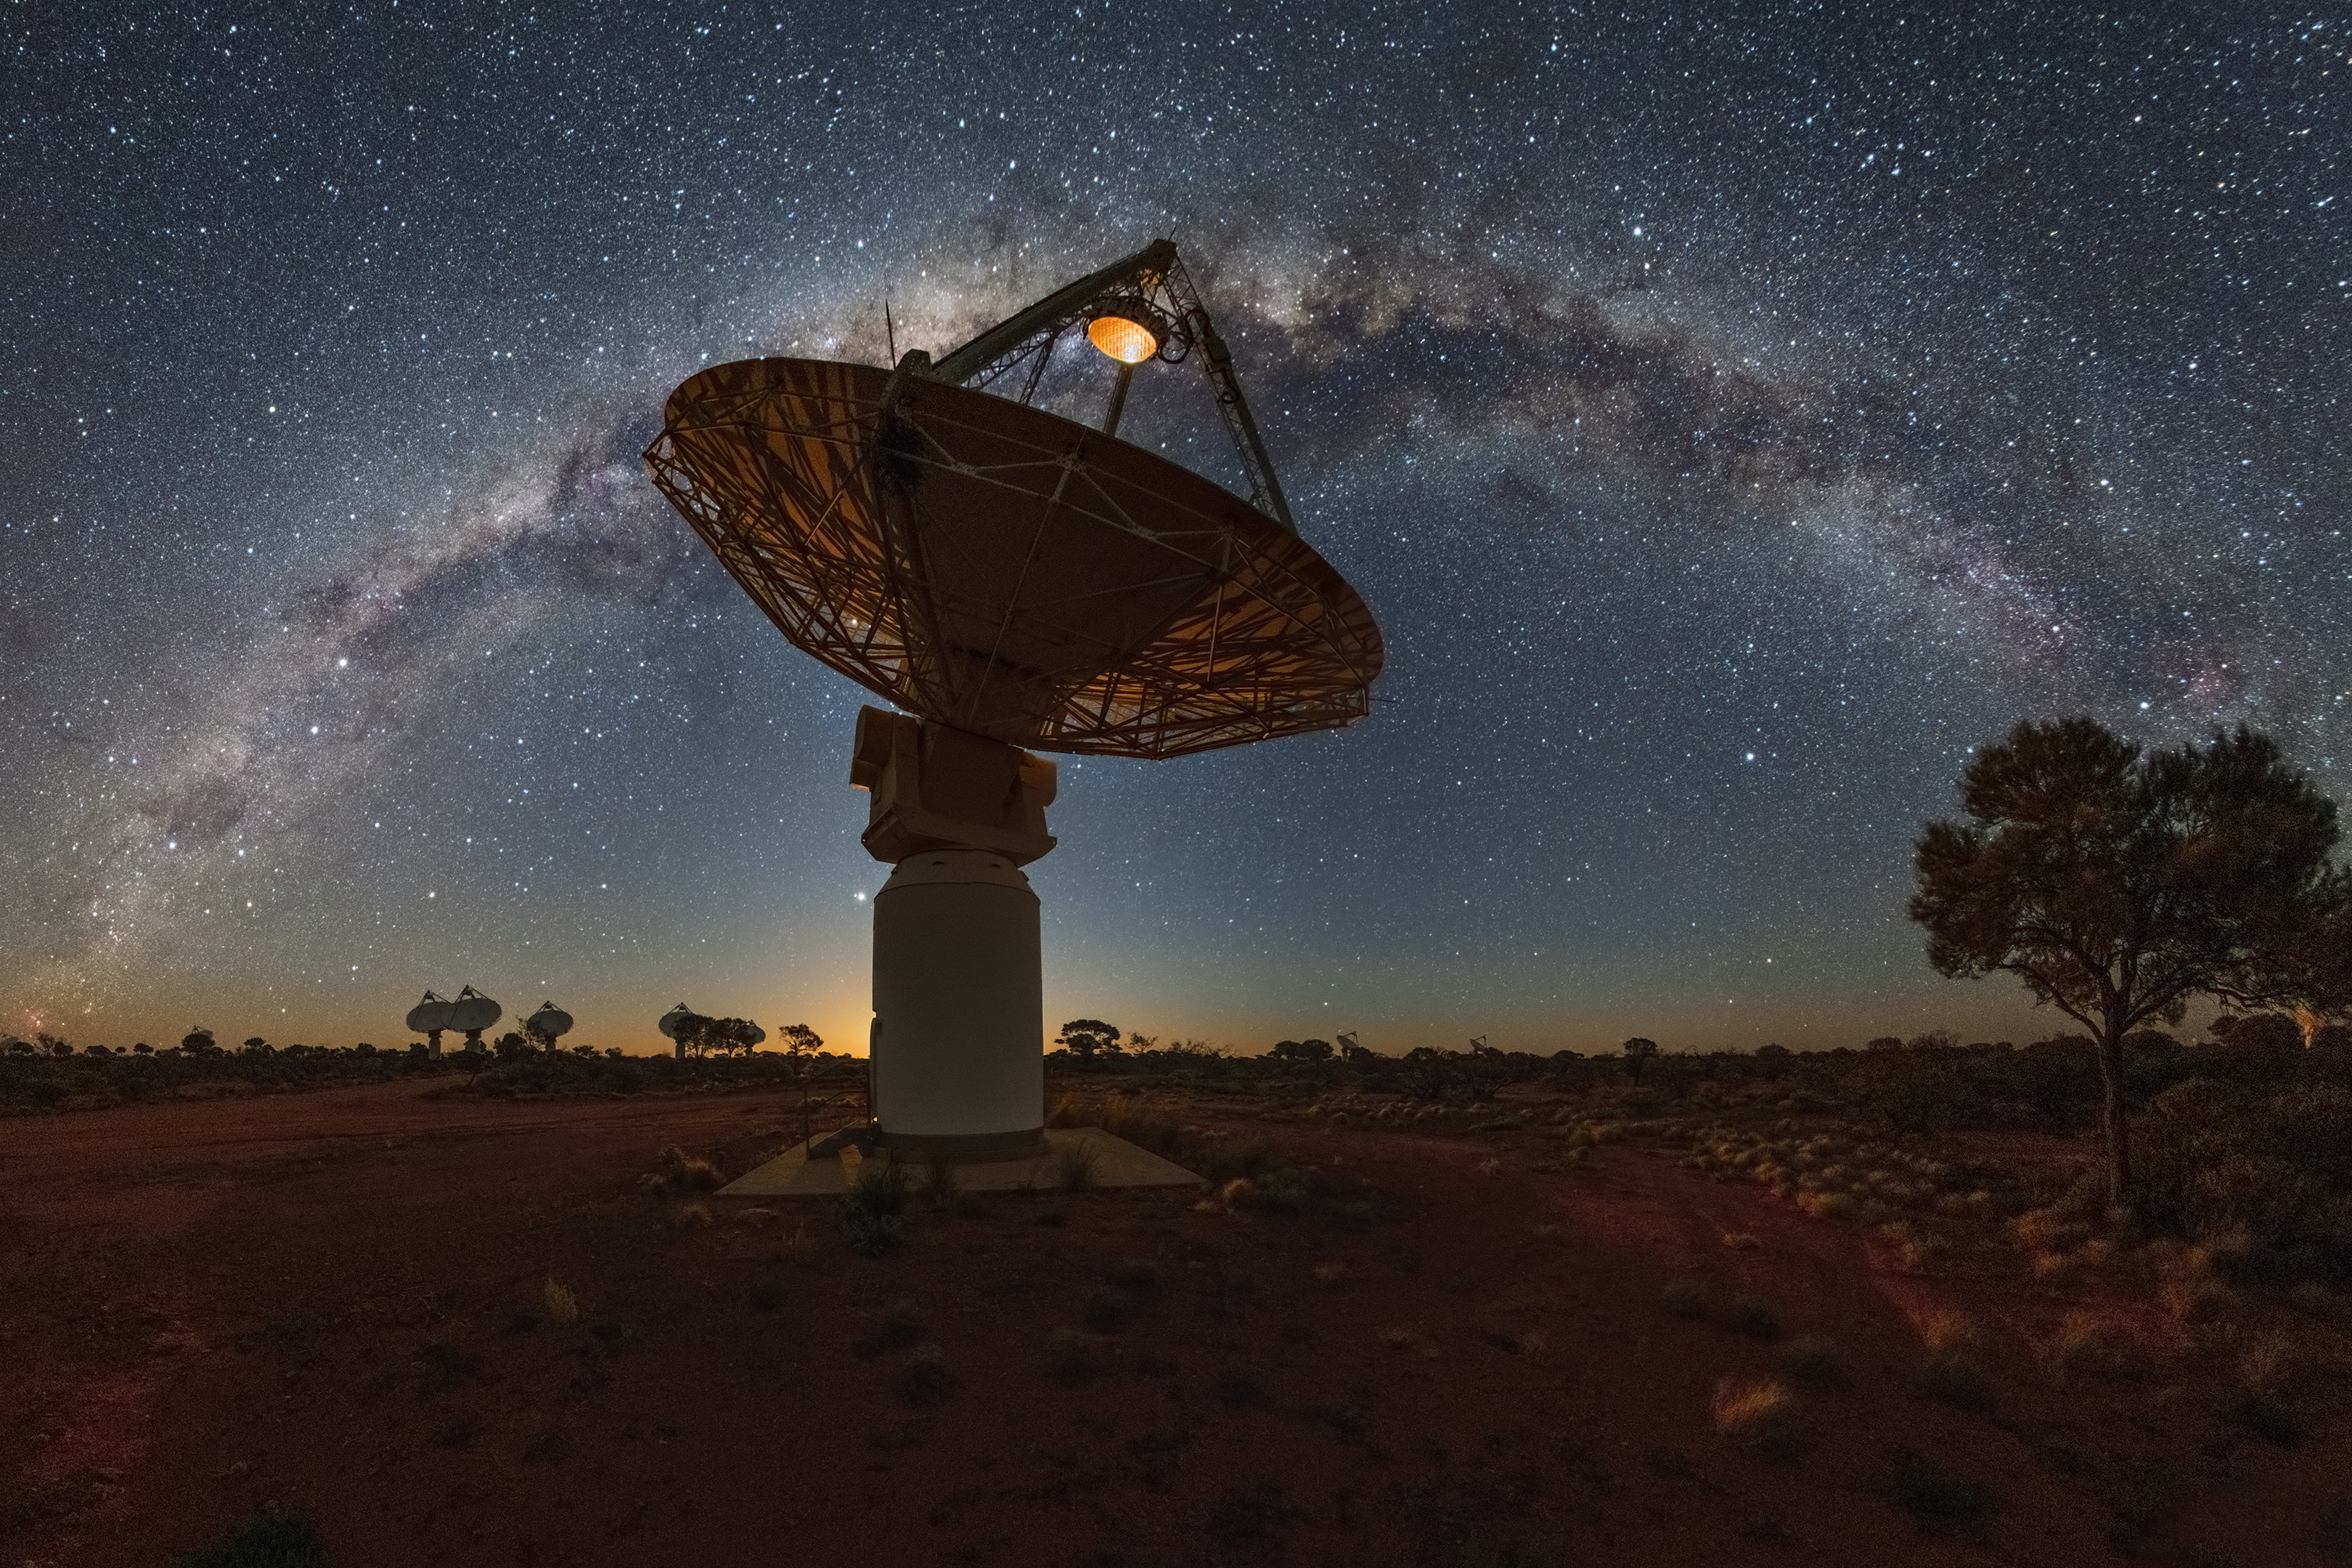 Une vue de l'Australian Square Kilometre Array Pathfinder observant la Voie lactée, le réseau de radiotélescopes australien d'un kilomètre carré situé à l'Observatoire de radioastronomie de Murchison, dans le Midwest australien, en Australie-Occidentale. © Commonwealth Scientific and Industrial Research Organisation (CSIRO)